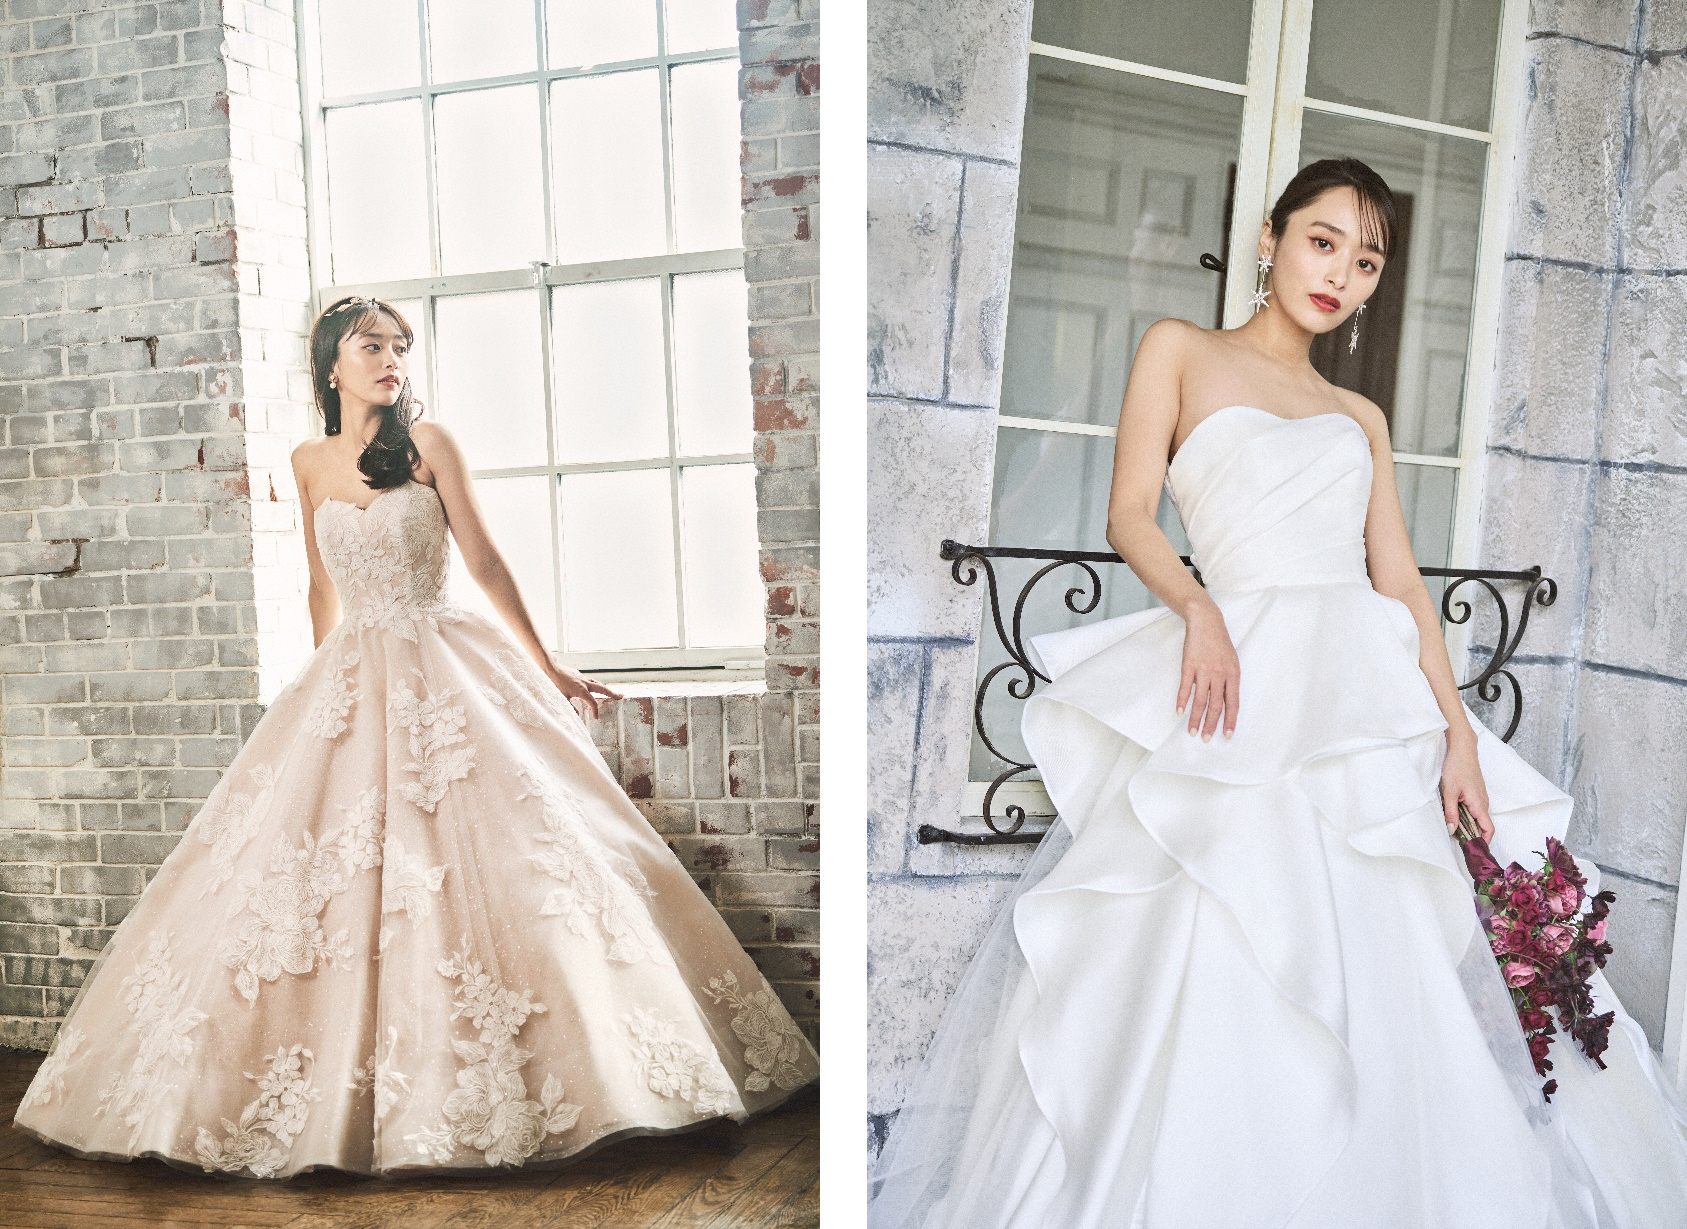 モデルの近藤千尋さんプロデュースの婚礼衣裳ブランド『CHIHIRO Kondo』
永遠に愛される花嫁をイメージした“幸せすぎるウェディングドレス”2デザインを発表！
～花嫁のスタイル映えを重視した美しいシルエットを実現～
